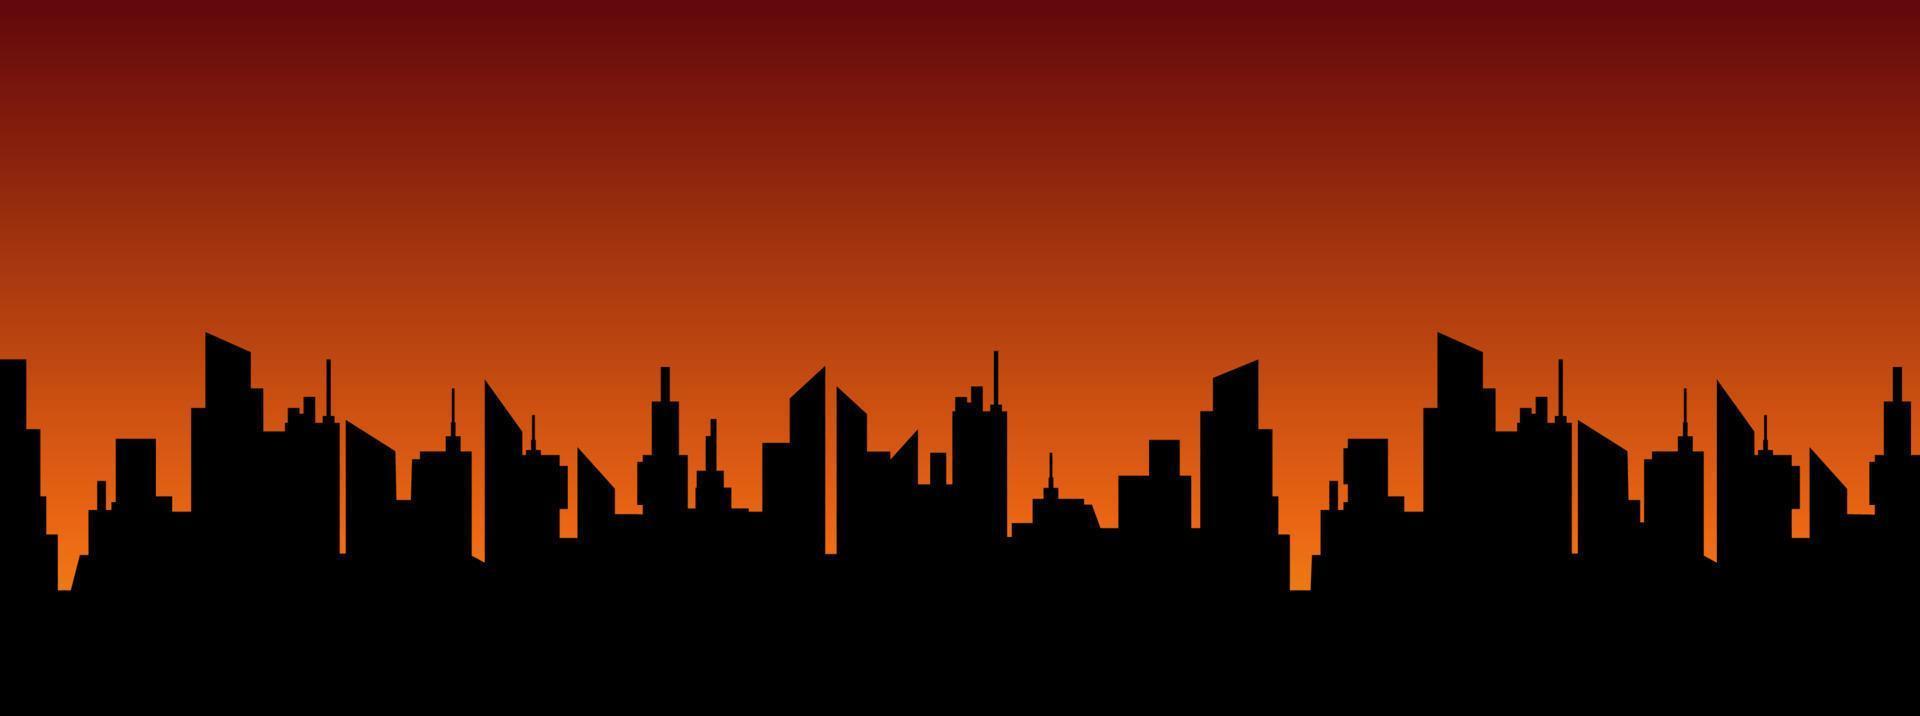 paisaje de la ciudad contra el sol poniente. siluetas de rascacielos panorámicos negros sobre fondo de puesta de sol de vector naranja oscuro.